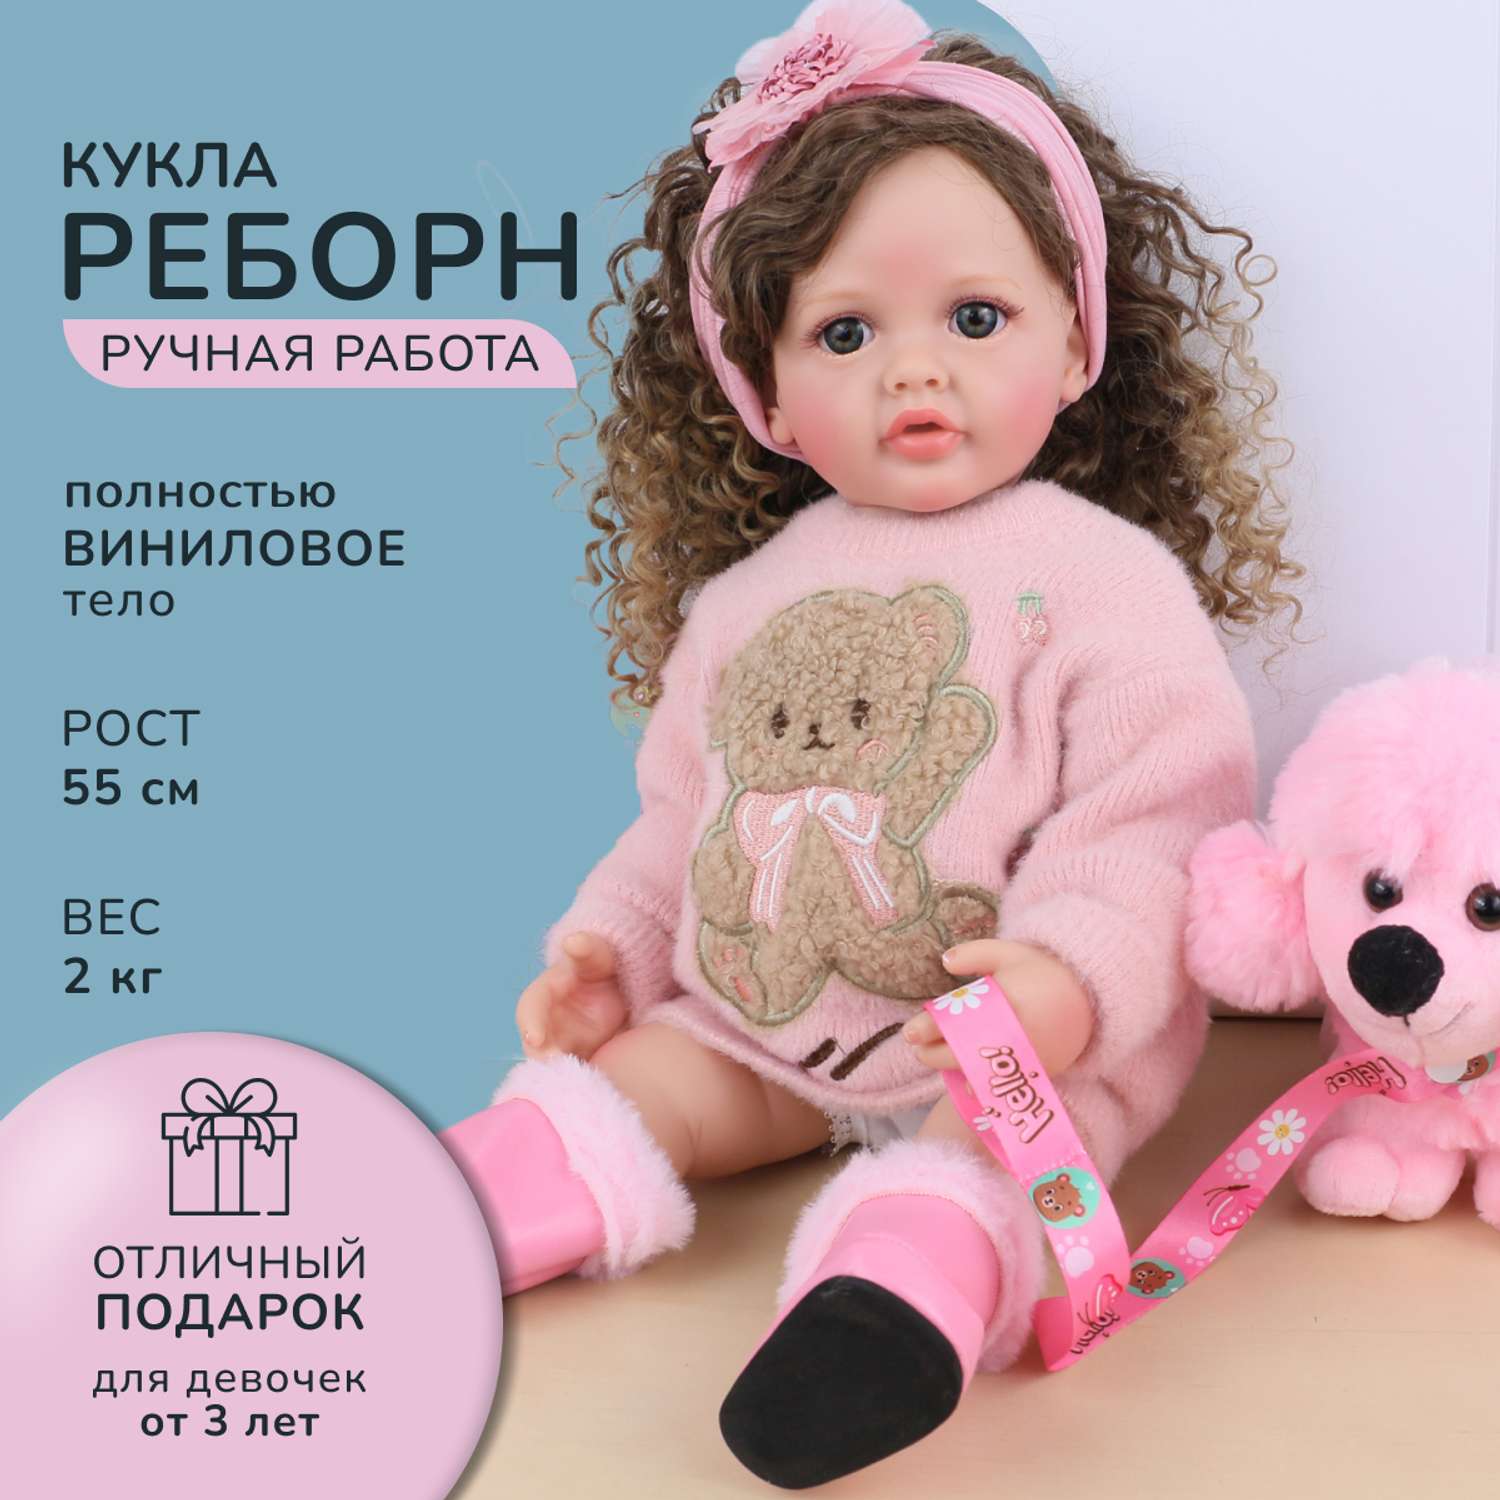 Кукла Реборн QA BABY Татьяна большая пупс набор игрушки для девочки 55 см 5554 - фото 1